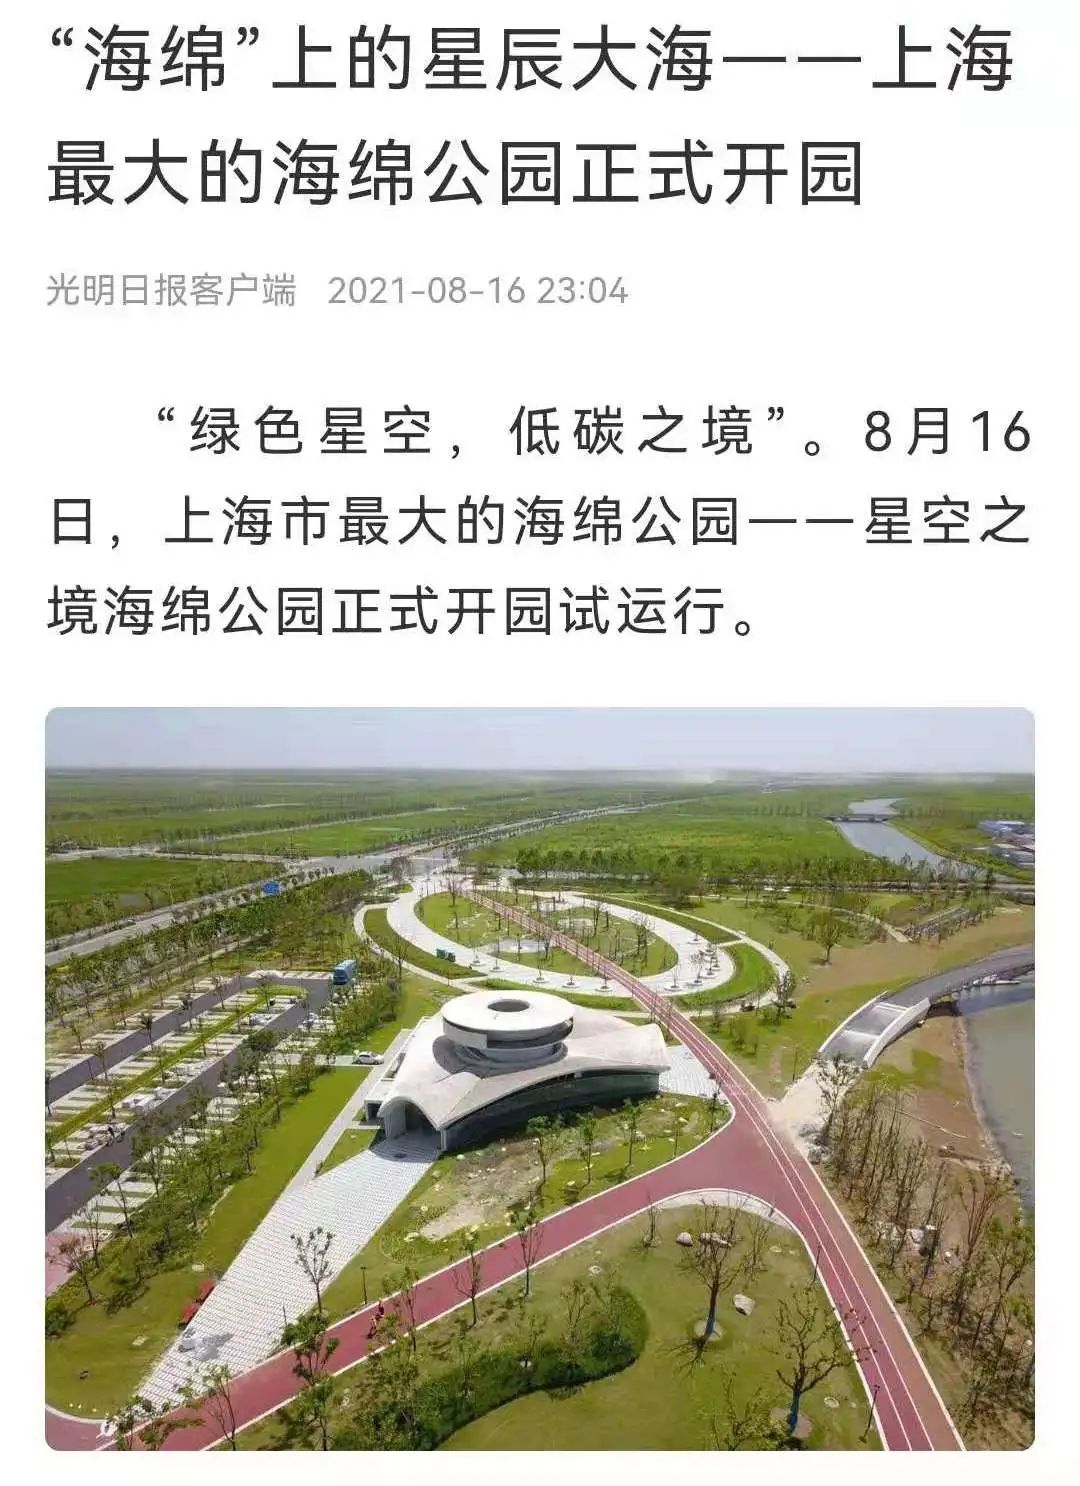 "会呼吸的星空之境"!中建集团打造上海最大海绵公园